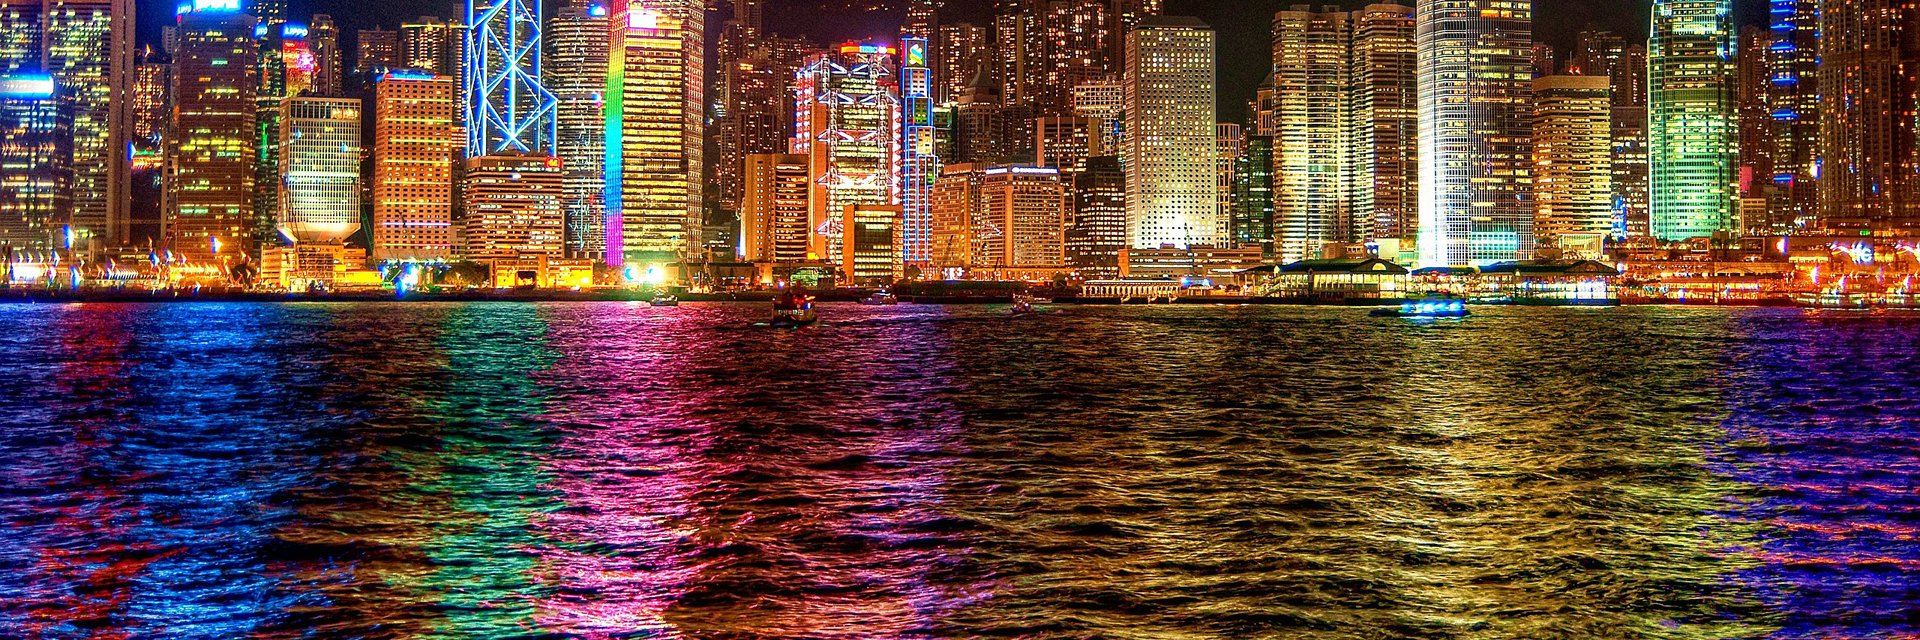 Dorsett Mongkok 4* (Гонконг, Гонконг) - цены, отзывы, фото, бронирование - ПАКС